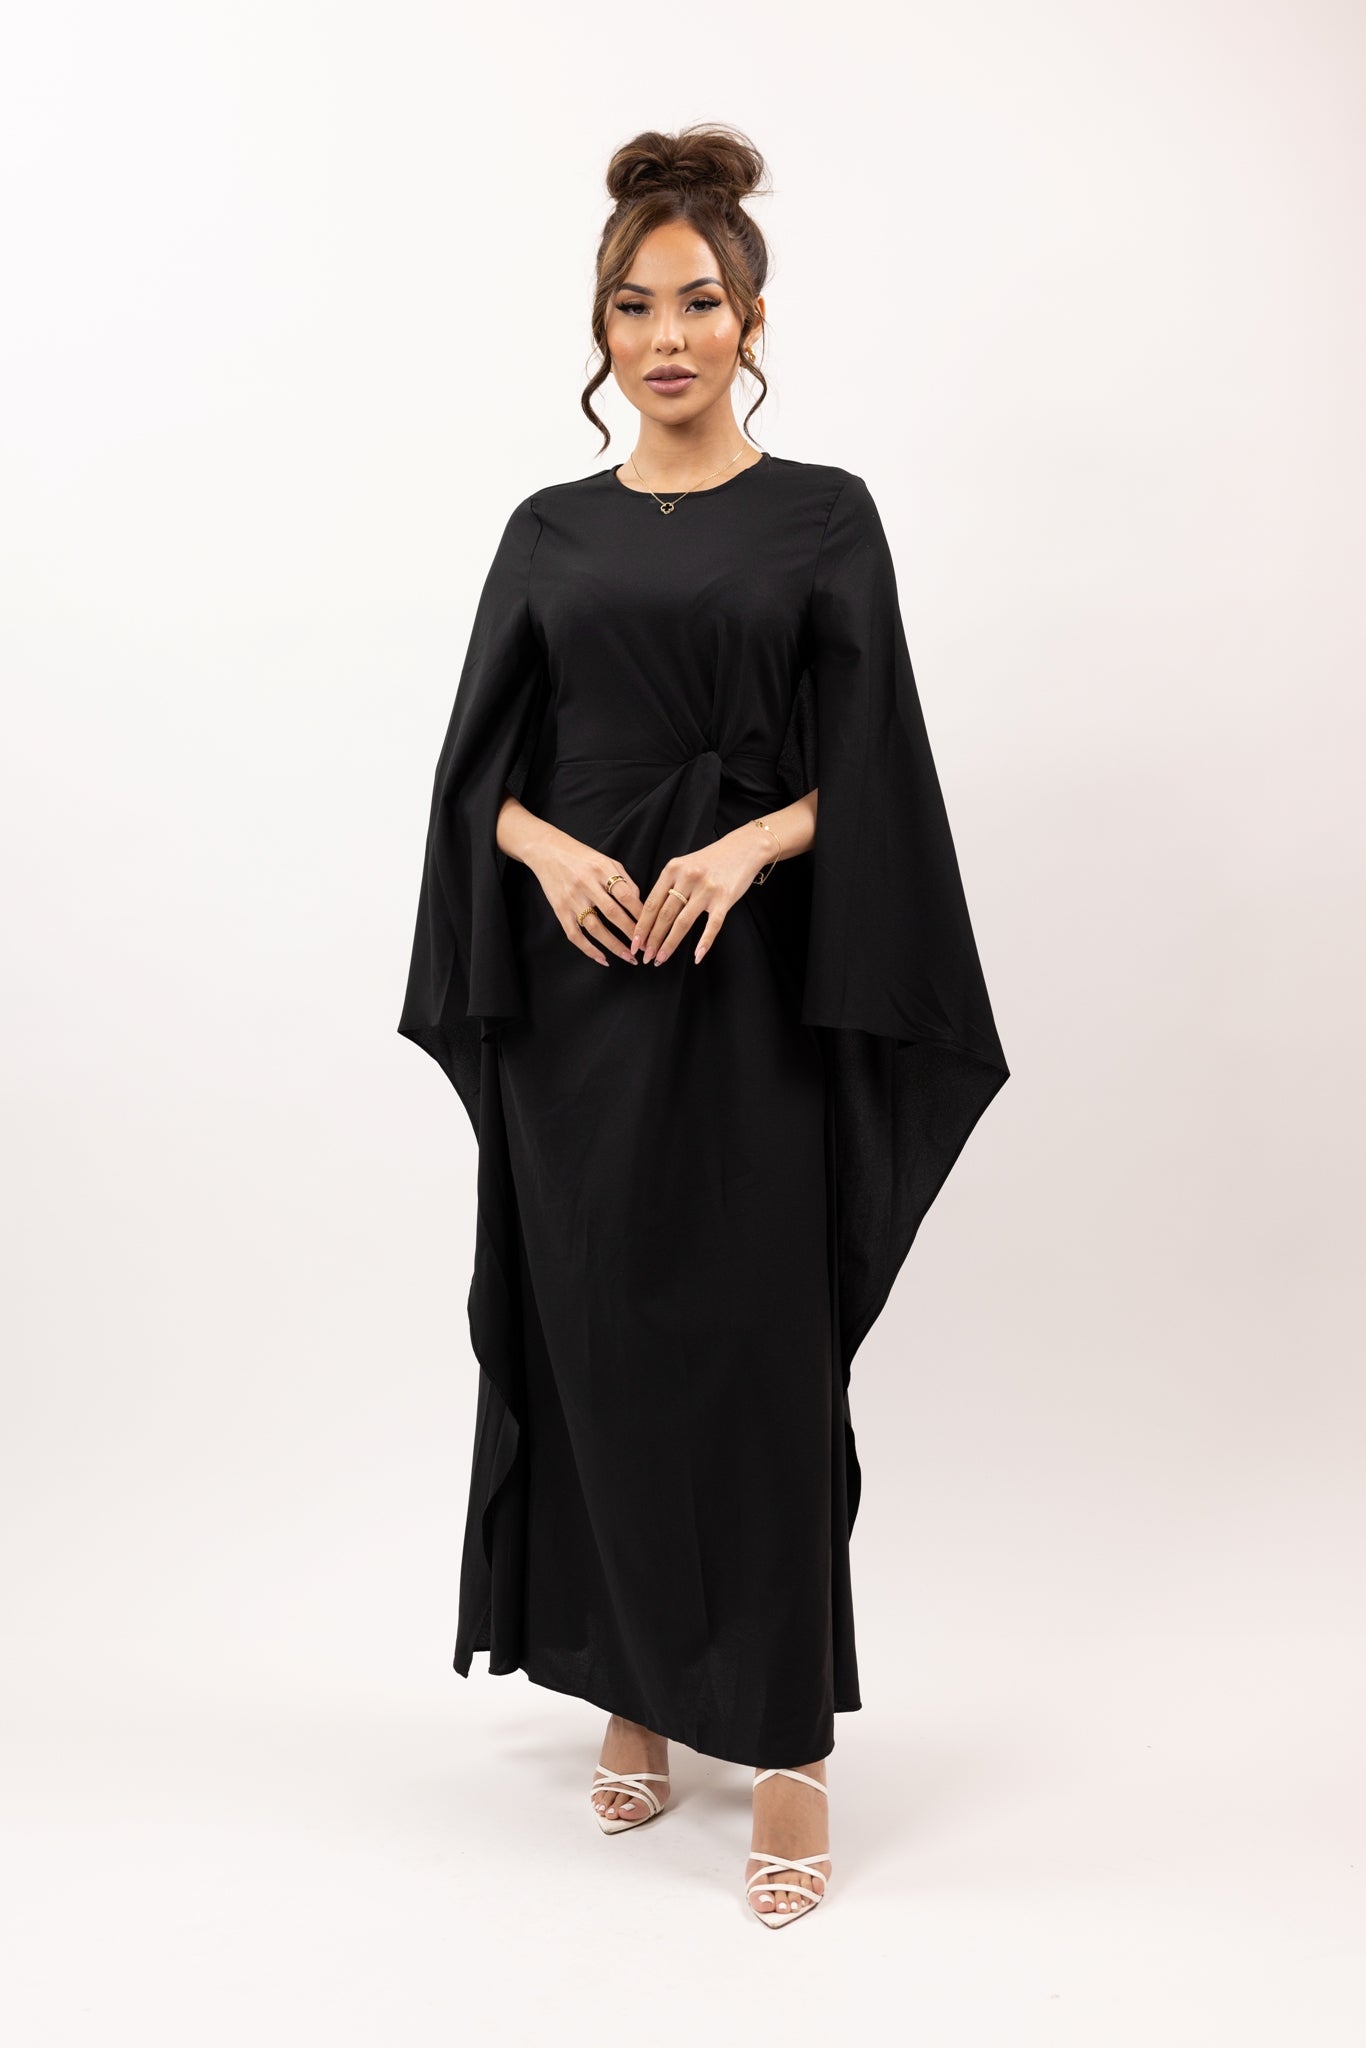 M8363Black-dress-kaftan-abaya